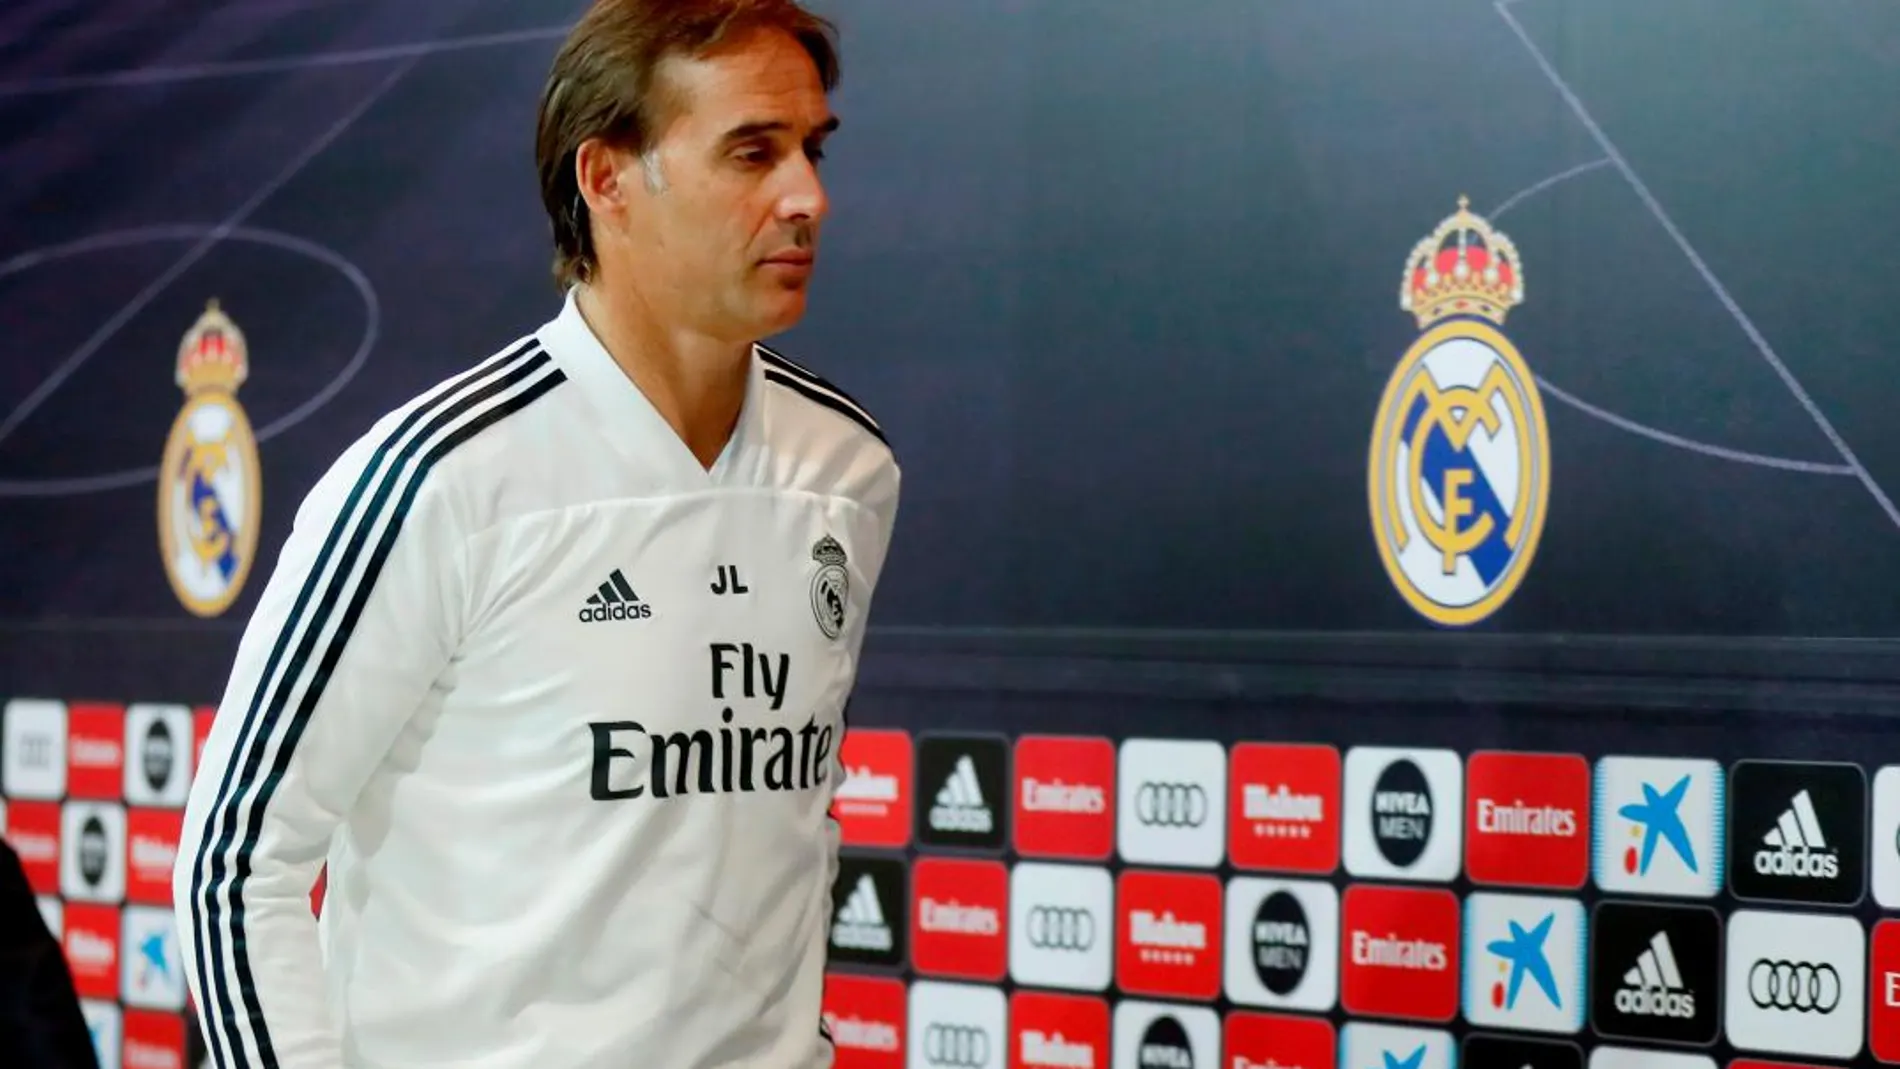 El entrenador del Real Madrid, Julen Lopetegui, durante la rueda de prensa en la Ciudad Real Madrid / Foto: Efe